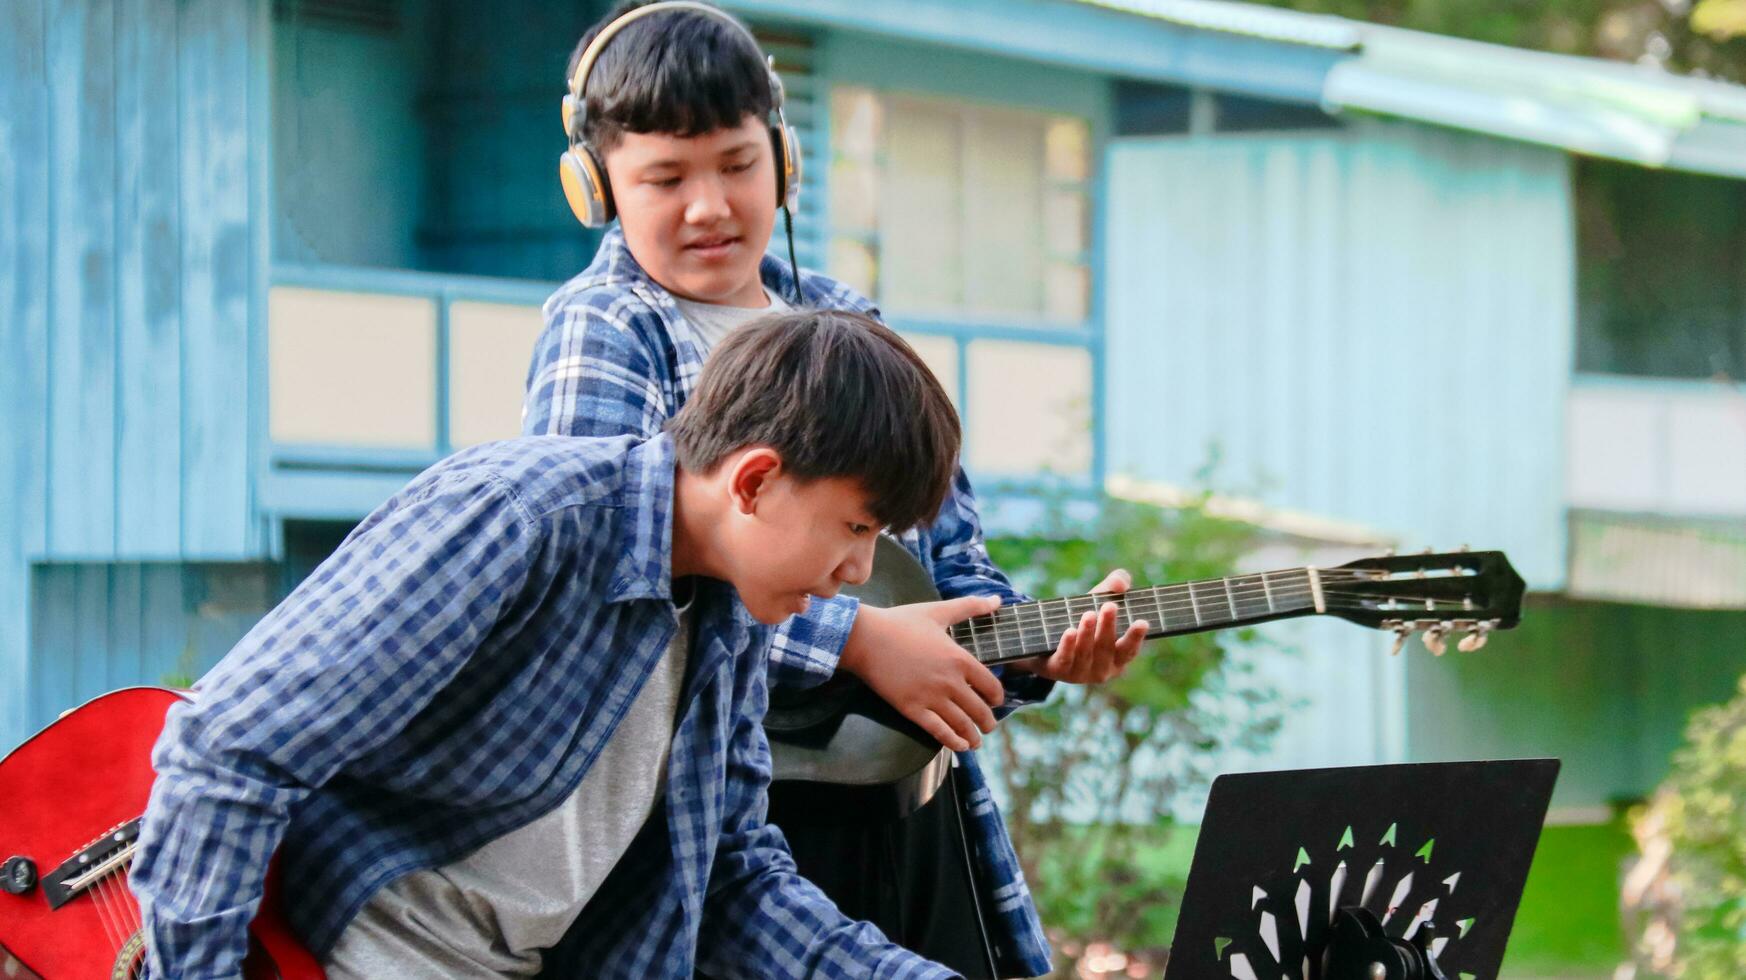 jovem ásia Rapazes estão jogando acústico guitarras dentro frente do uma casa conceito do Aprendendo e livre Tempo Atividades foto